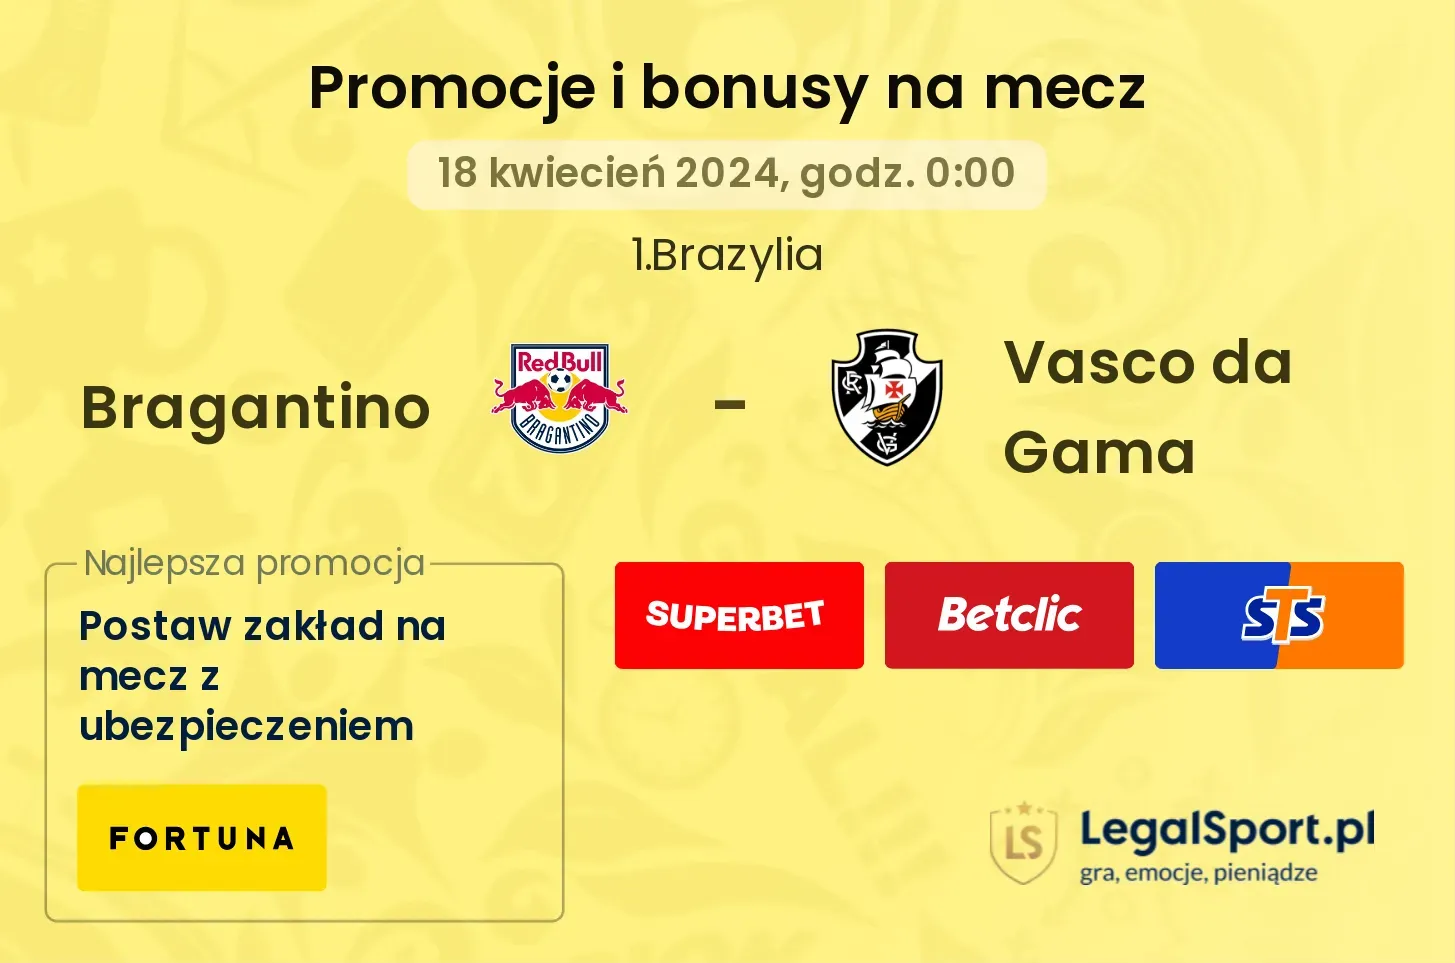 Bragantino - Vasco da Gama promocje bonusy na mecz